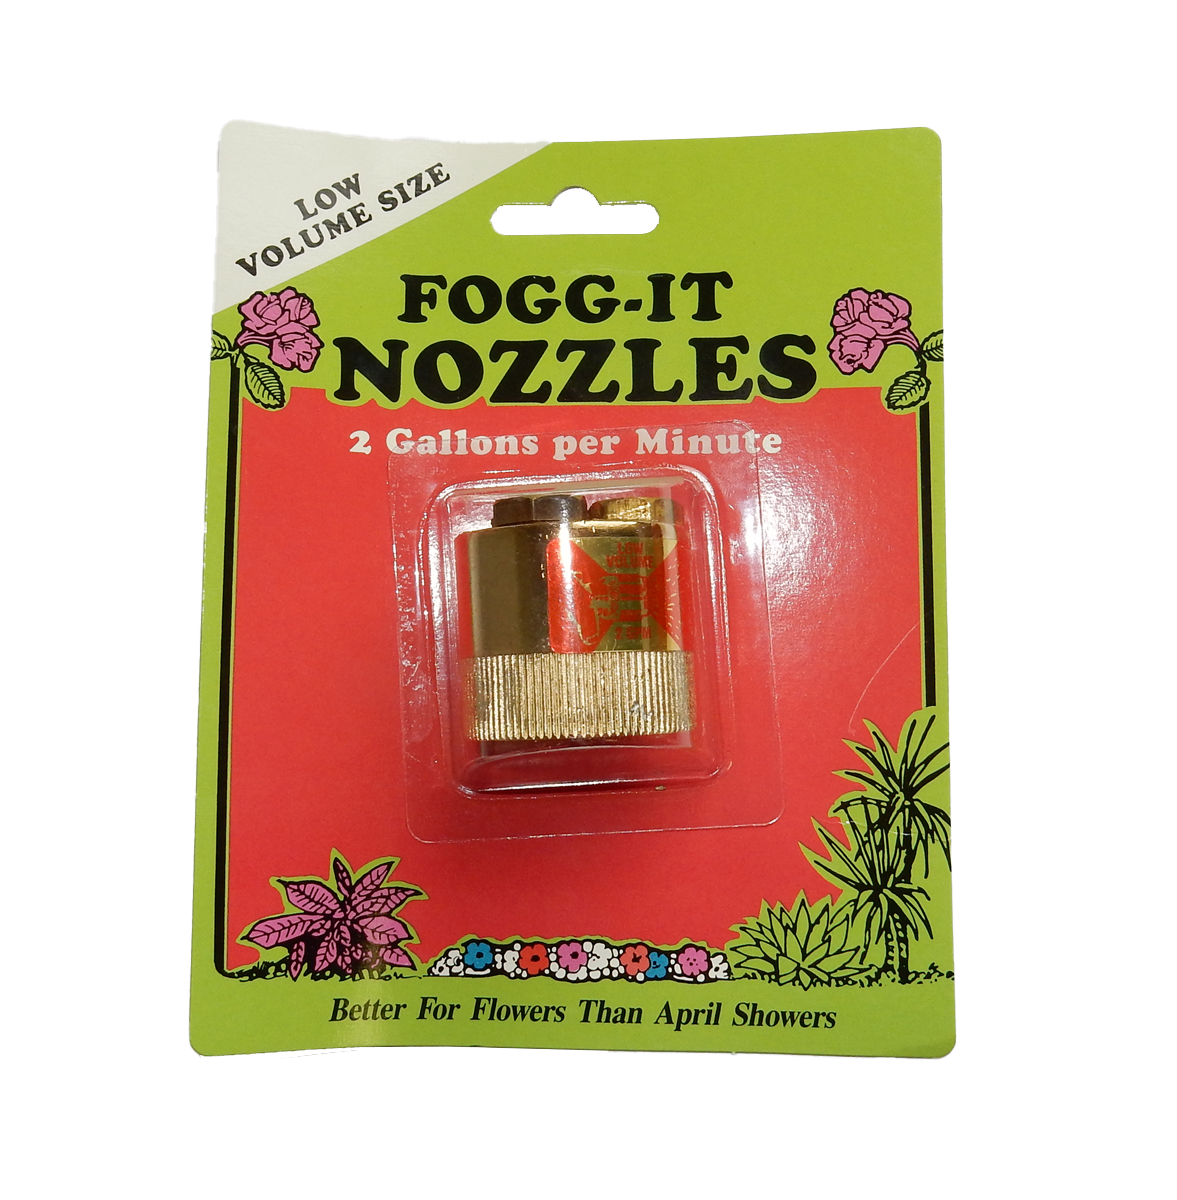 2 GPM Low Fogg-It Nozzle - 6 per box